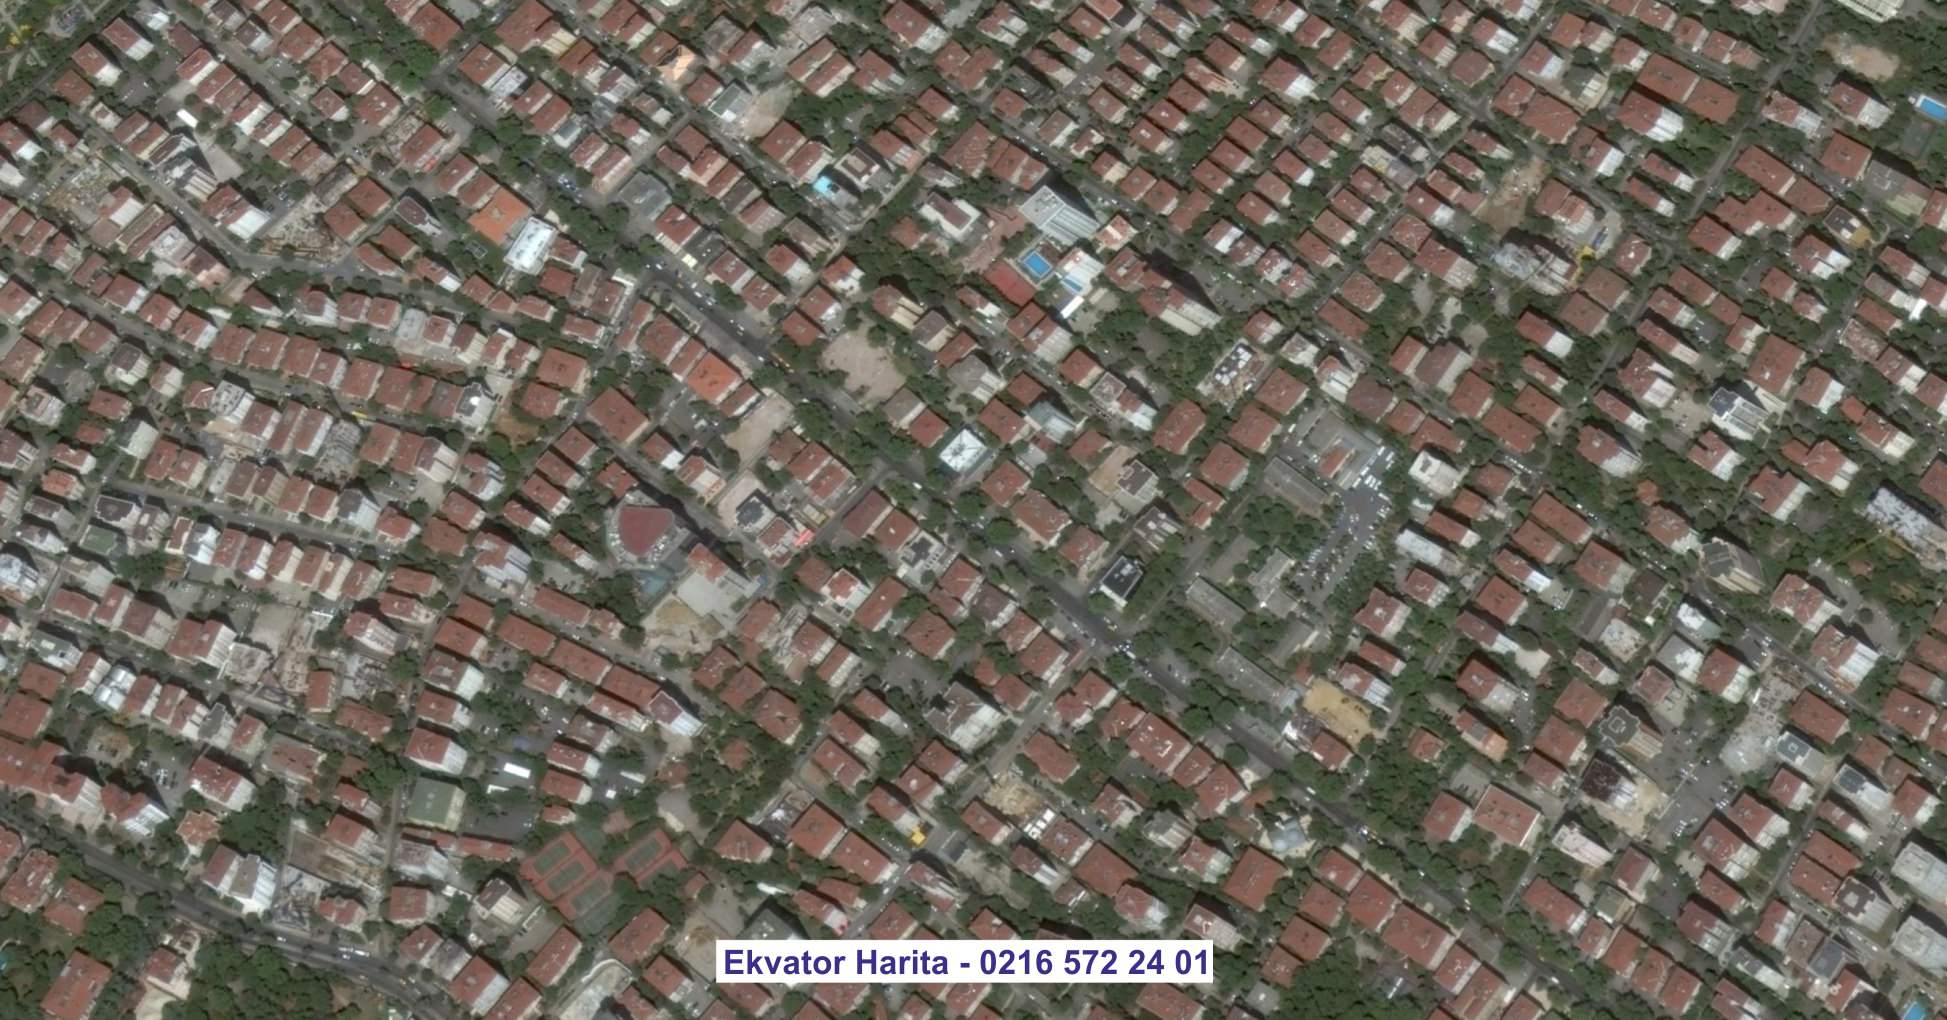 Çanakkale Uydu Görüntüsü Örnek Fotoğrafı